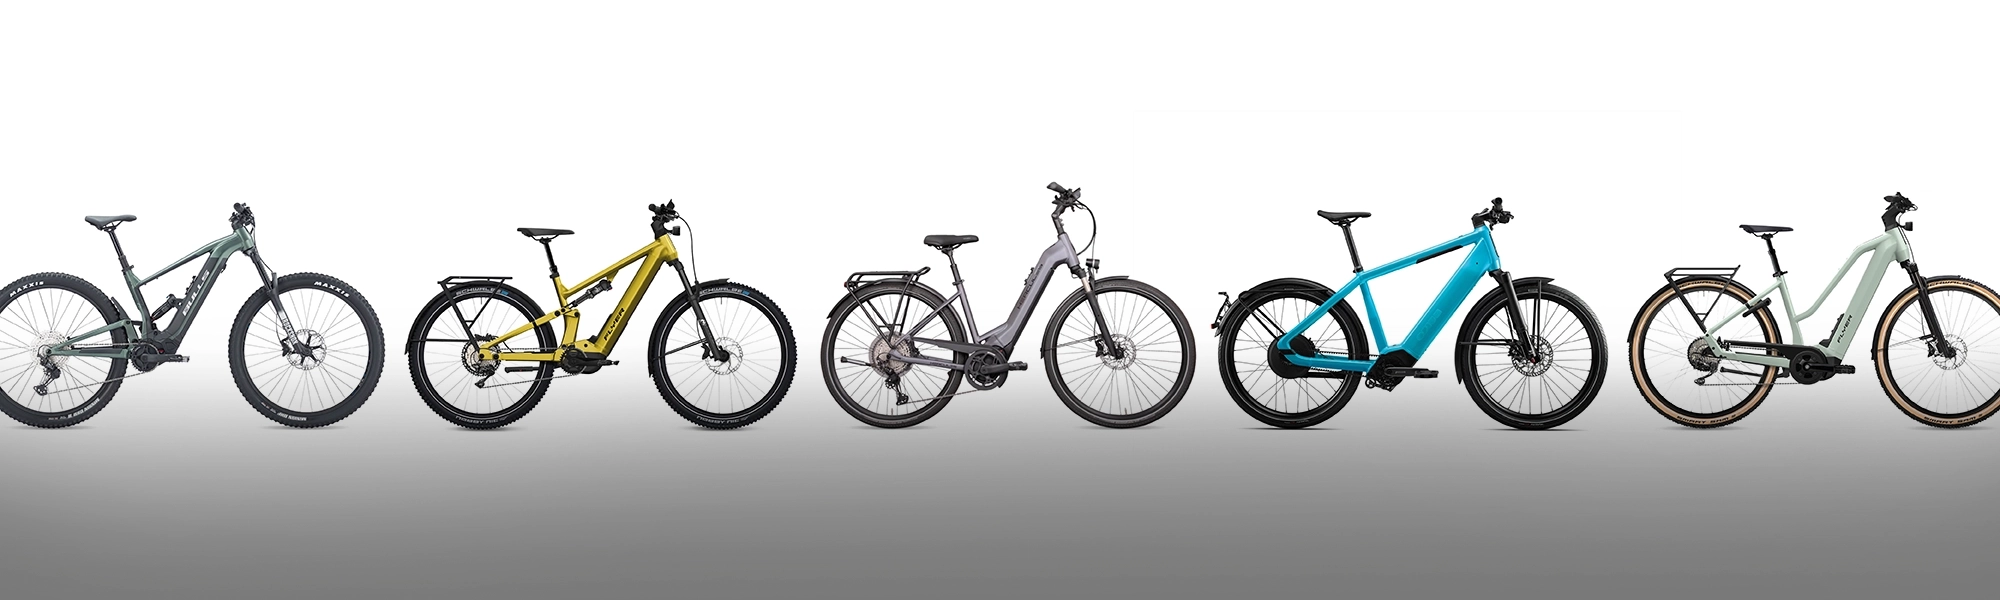 Fahrrad und E-Bikes - Alles zur Ausstattung, Technik und Zub